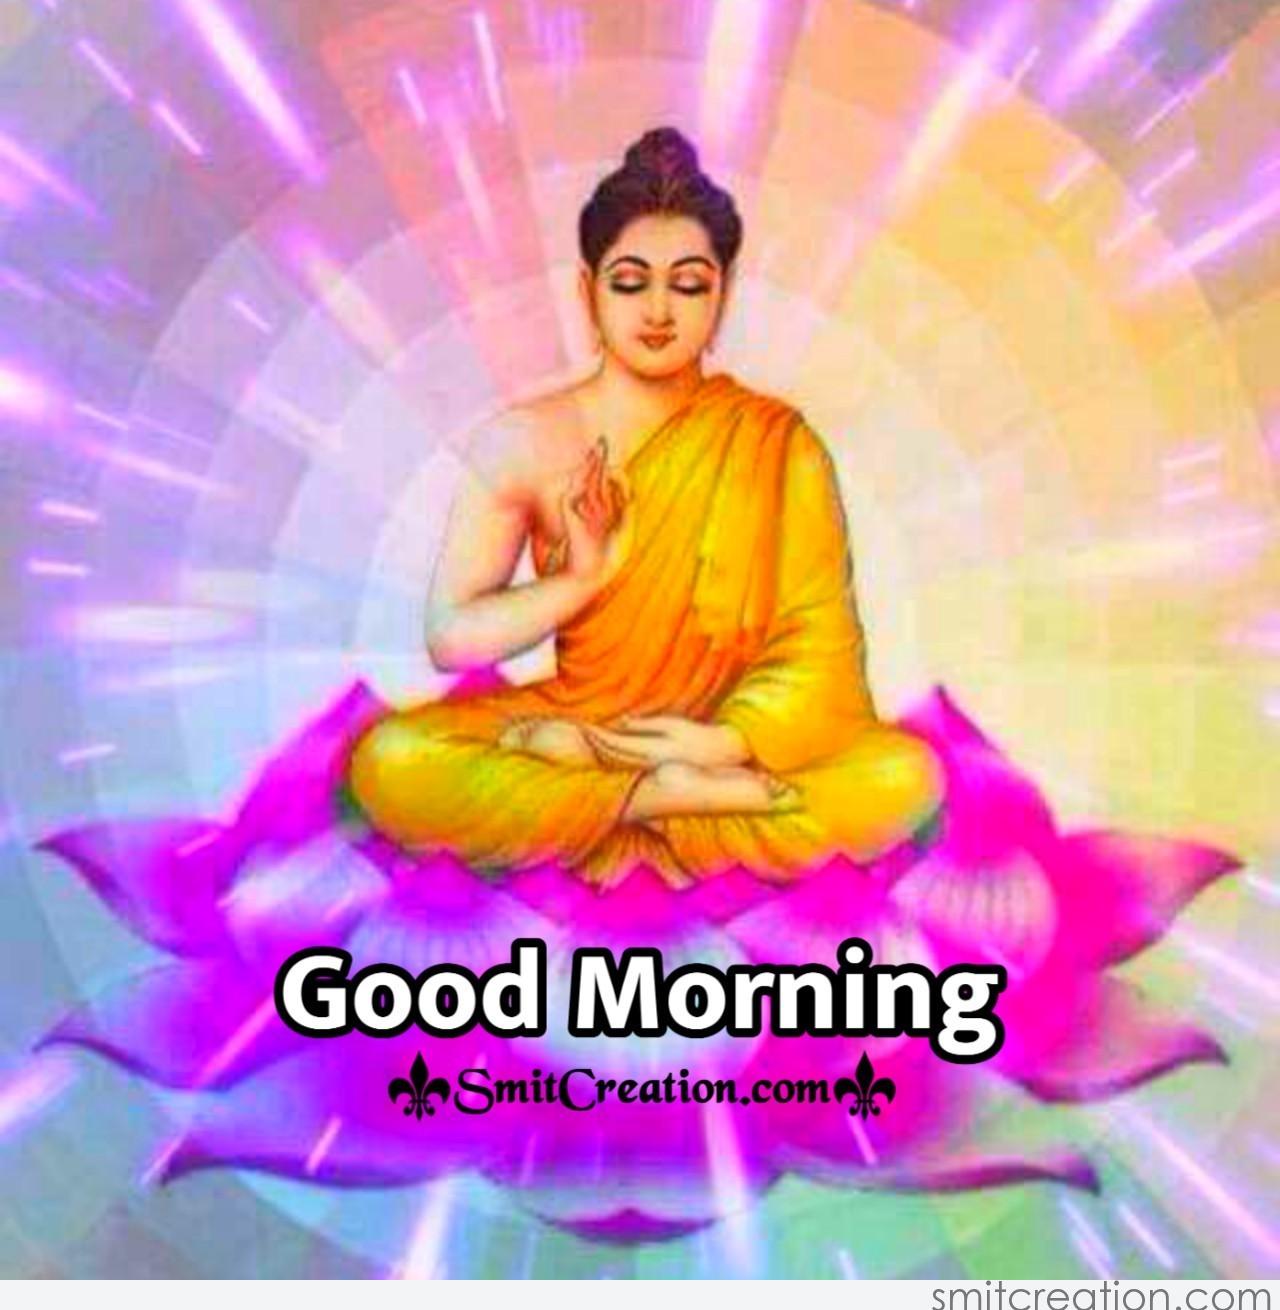 Good Morning Buddha Image - SmitCreation.com